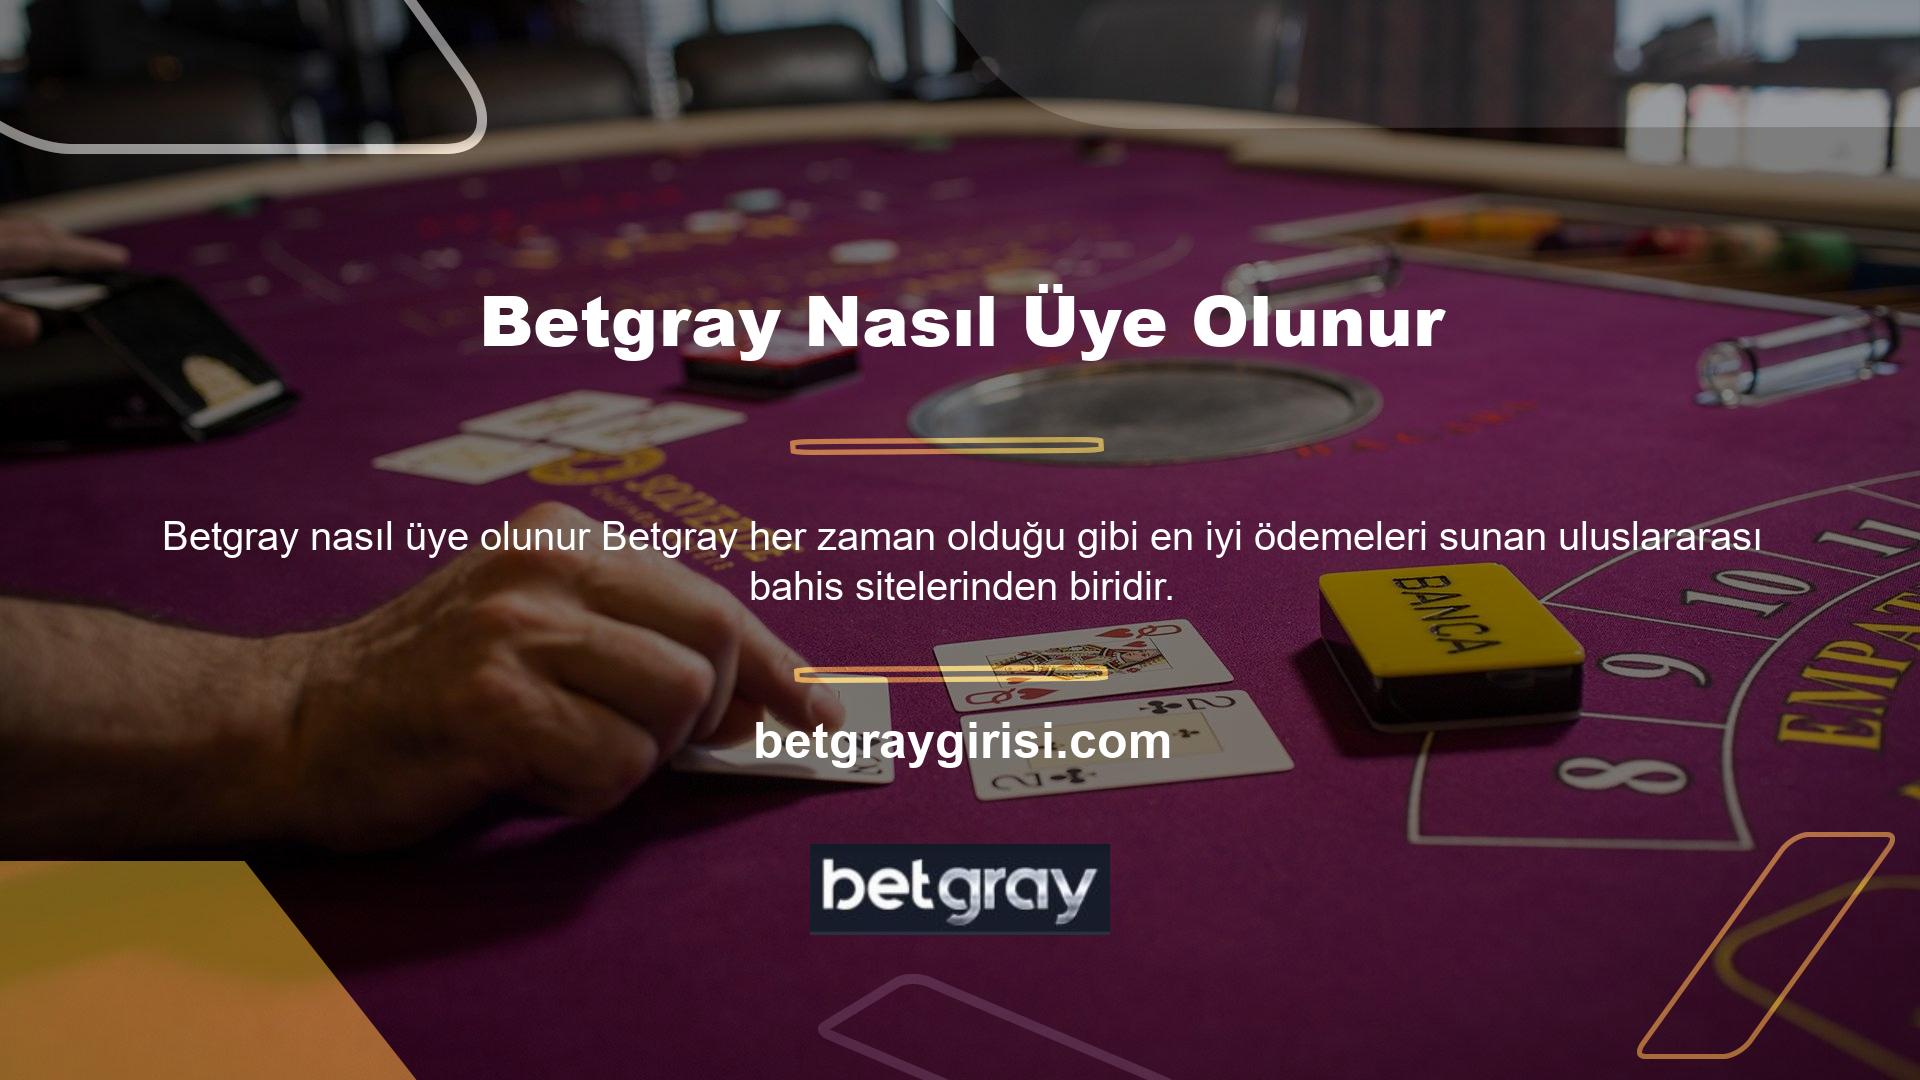 Betgray web sitesi, Betgray web sitesinin spor veya canlı bahis bölümlerinde görülebilen en fazla sayıda bahis devresine sahiptir